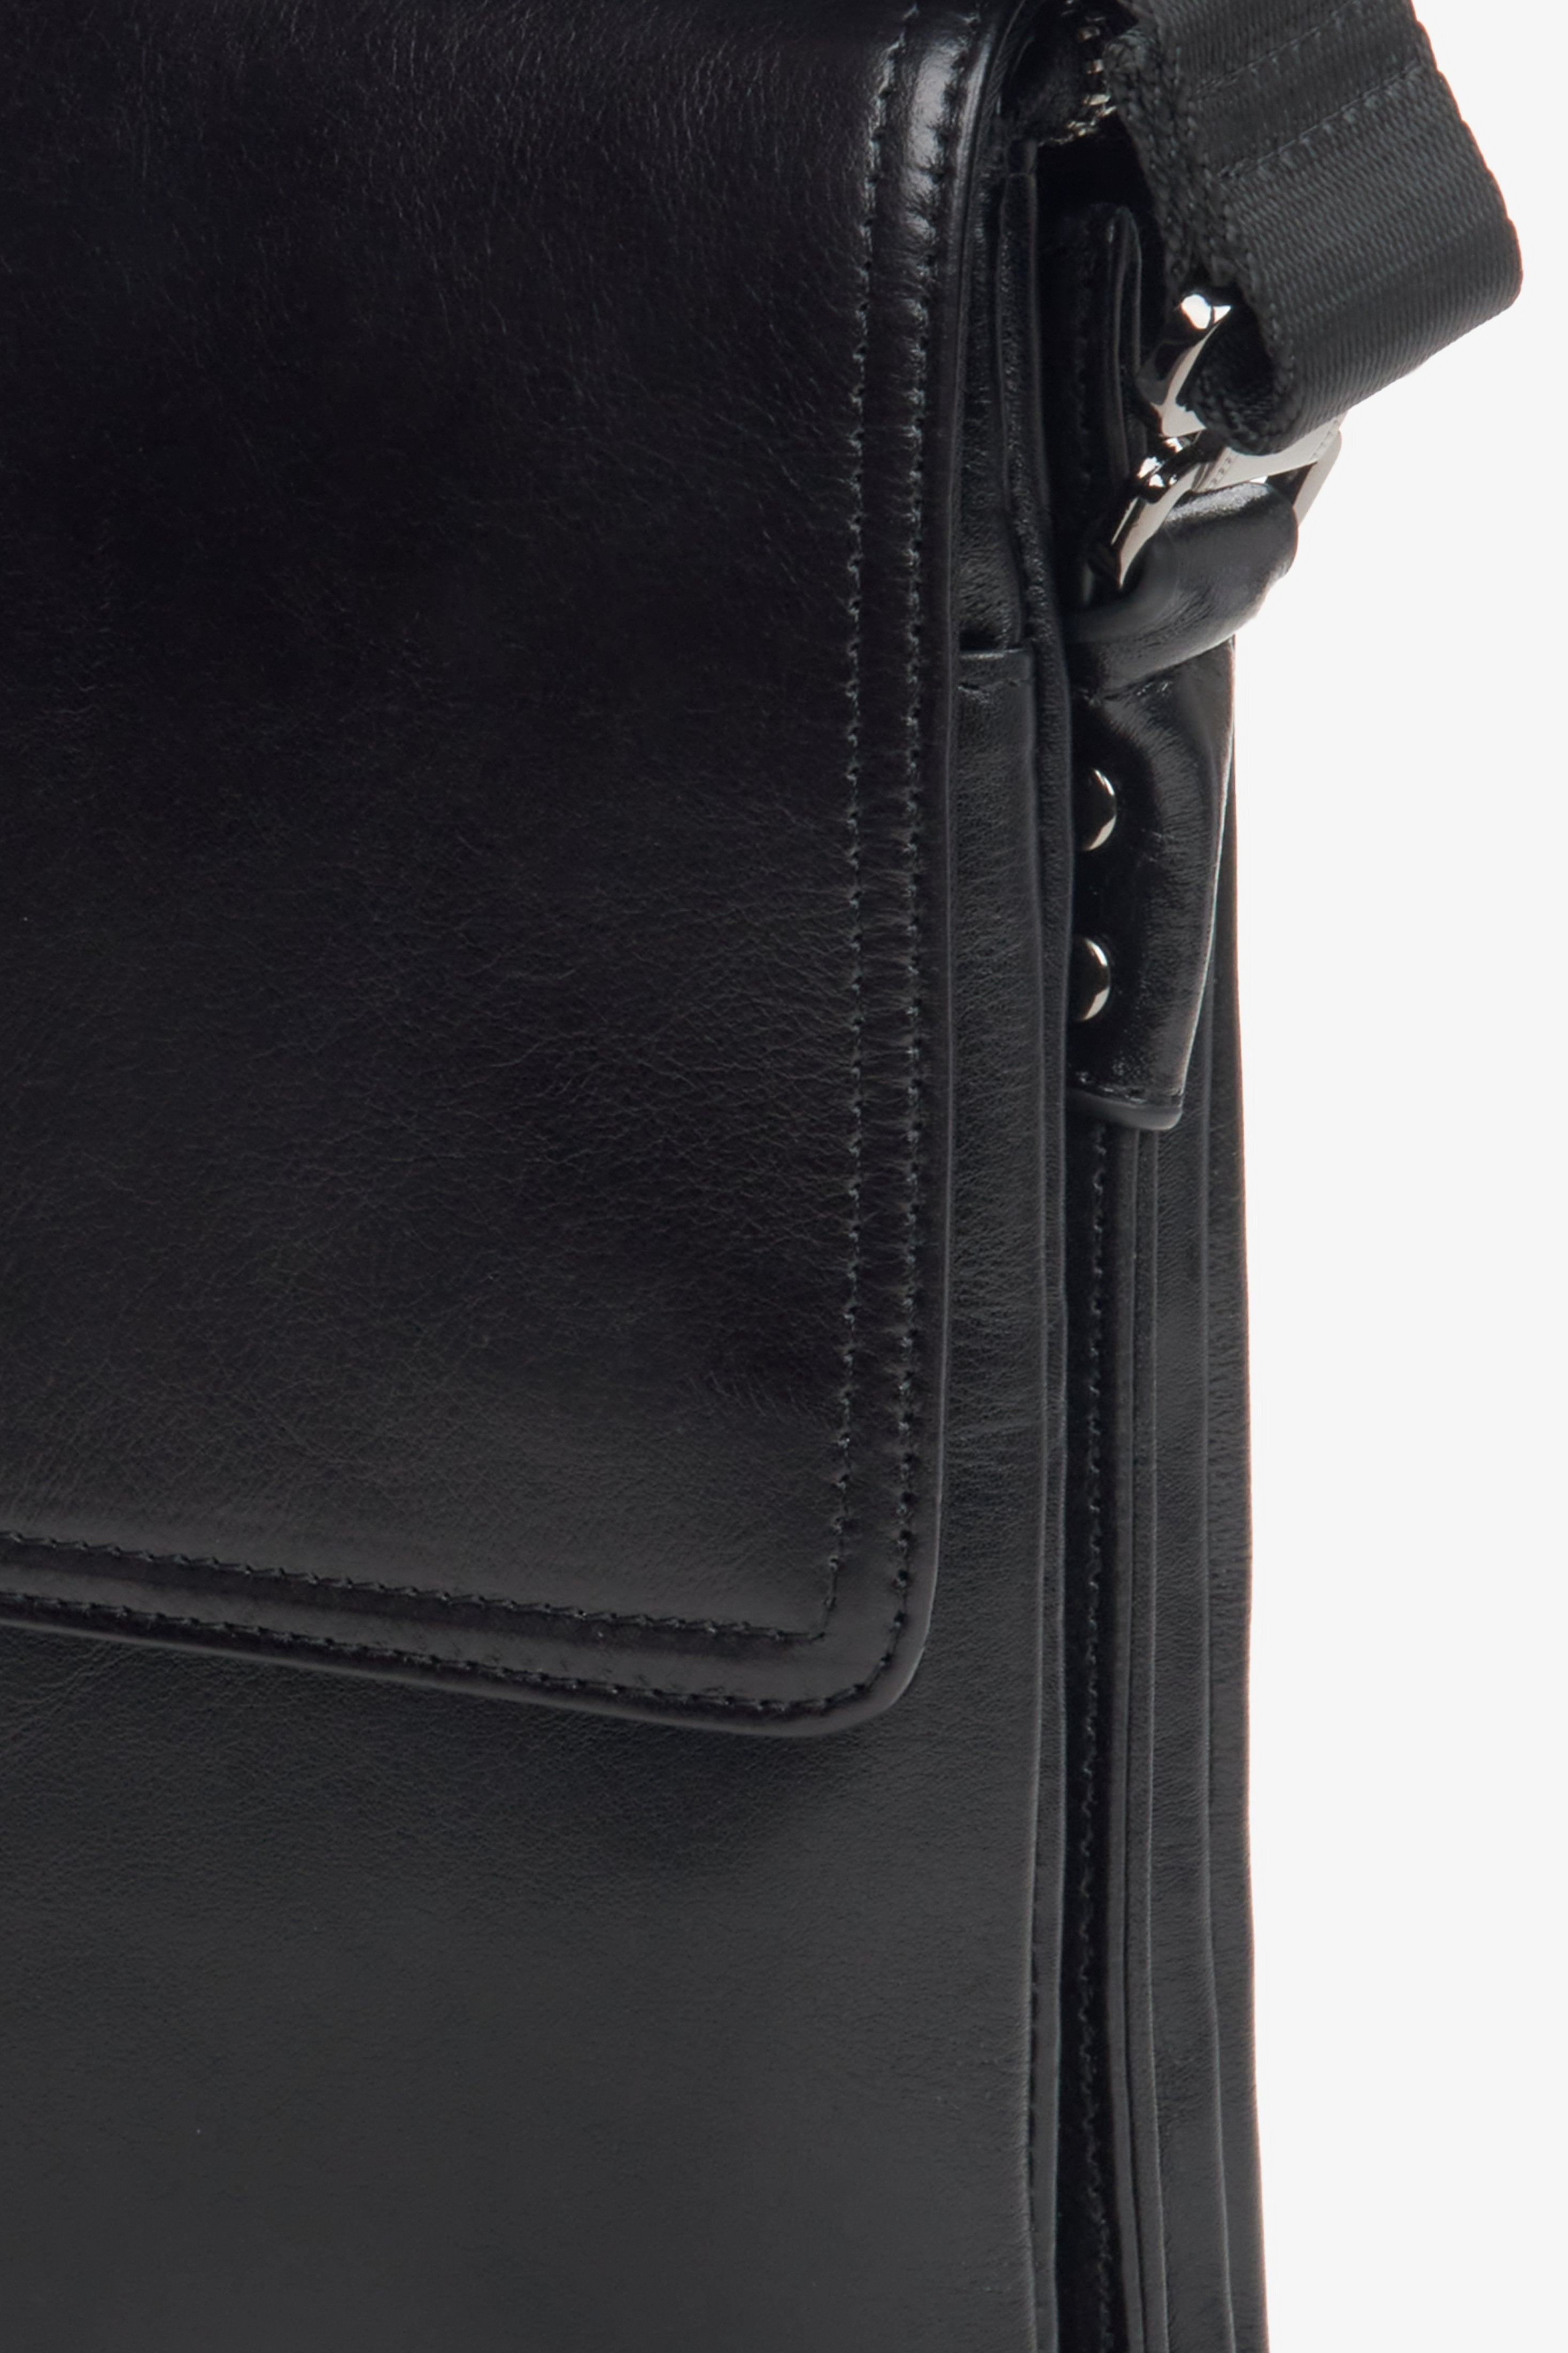 Mała skórzana torba męska w kolorze czarnym Estro - zbliżenie na detal.